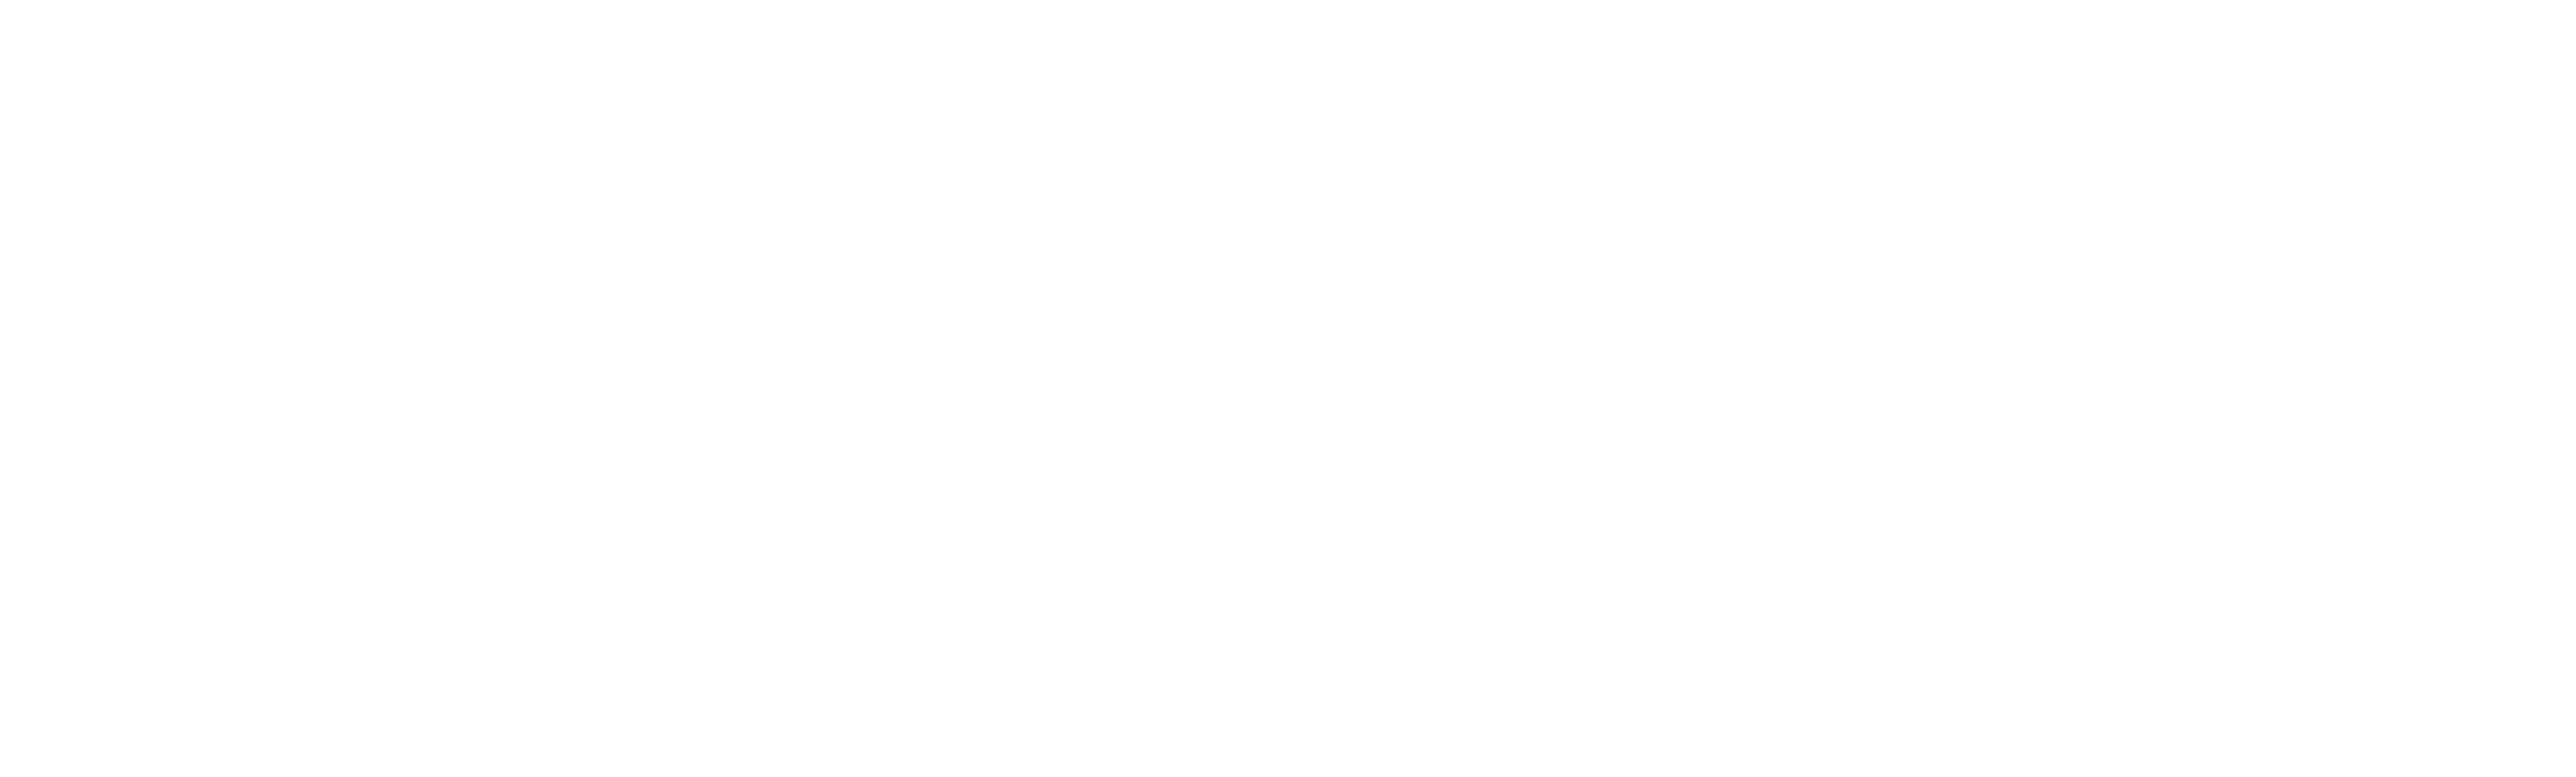 Logo van BNP Paribas Real Estate met vogels in een wit vierkant, officiële partner van We Invest.